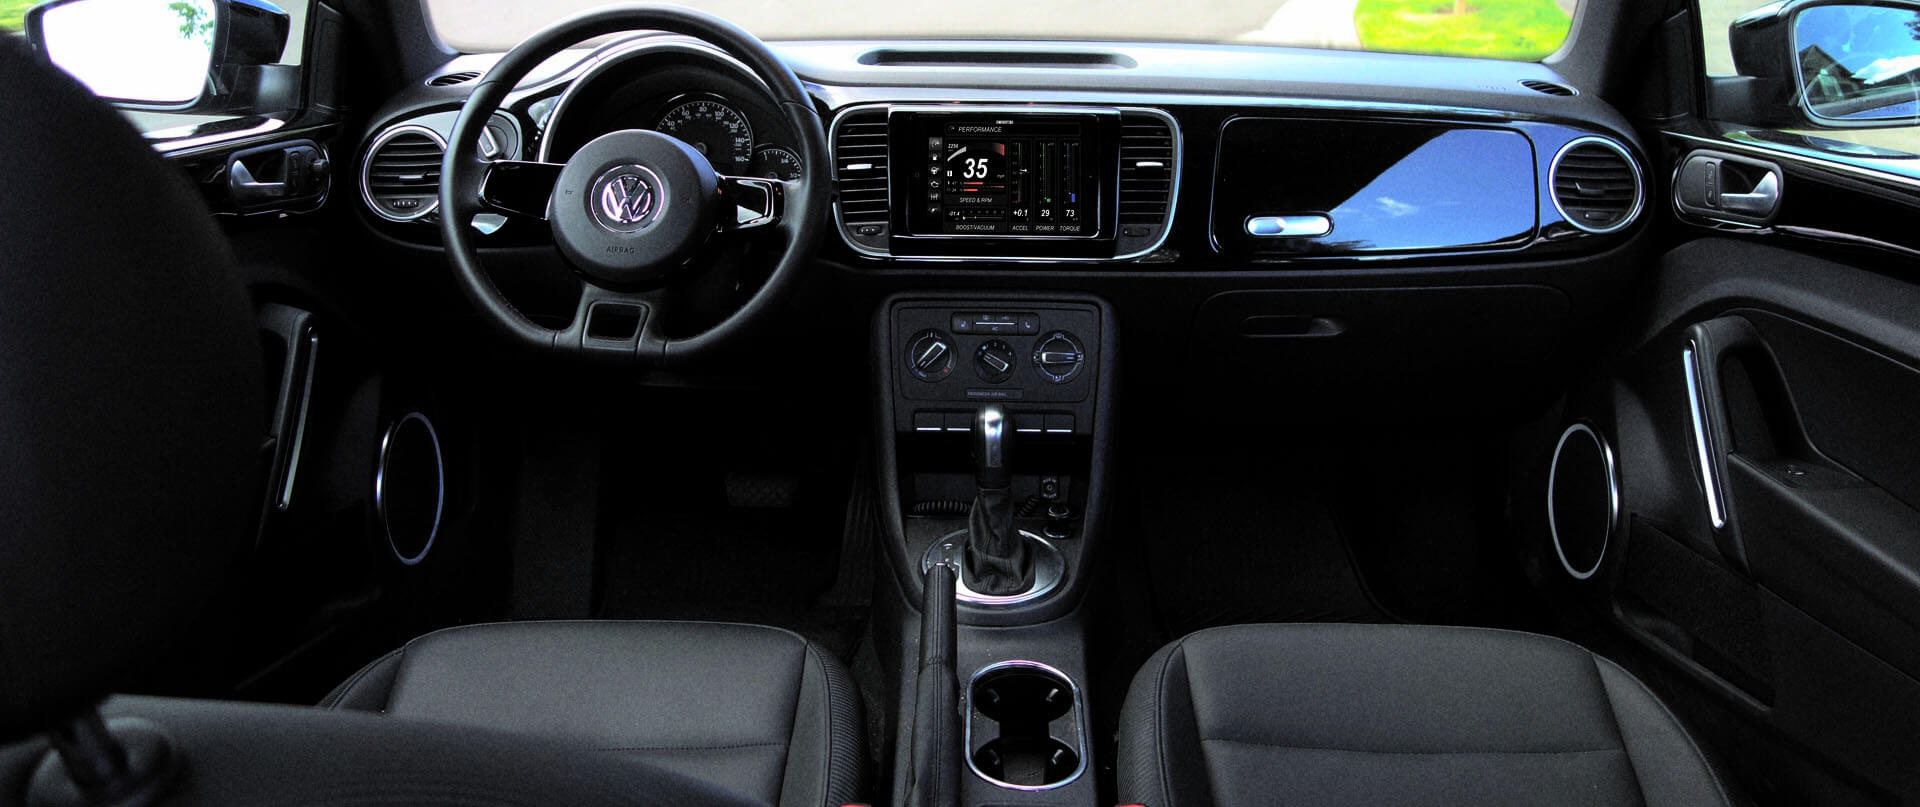 Volkswagen Passat dash kit